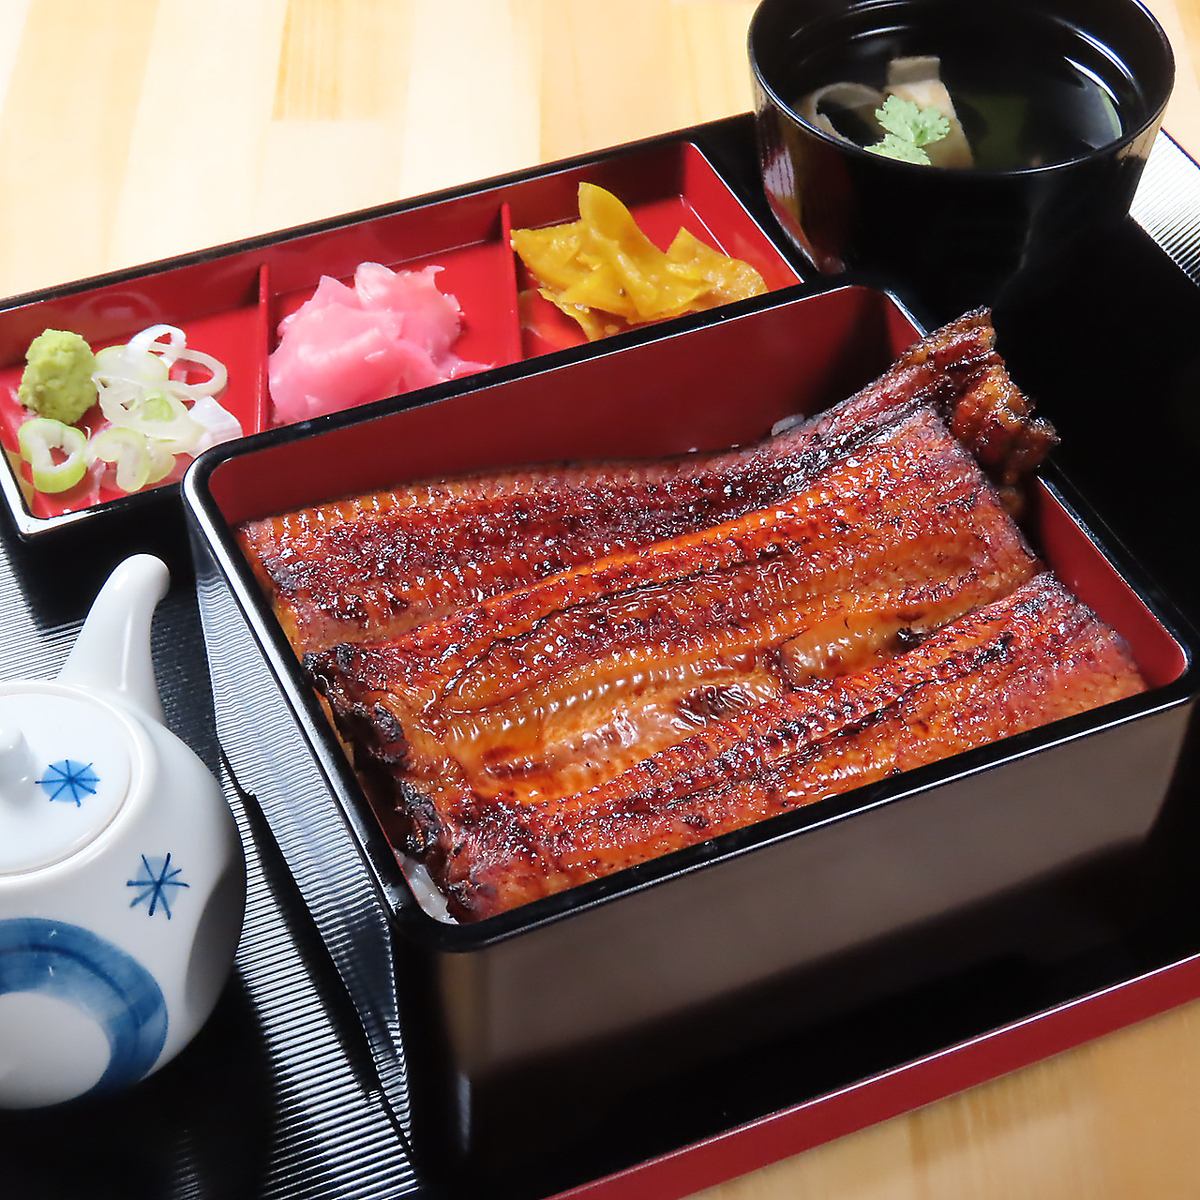 用1条鳗鱼制作的鳗鱼售价含税2,600日元。请享用我们实惠且优质的鳗鱼汁。